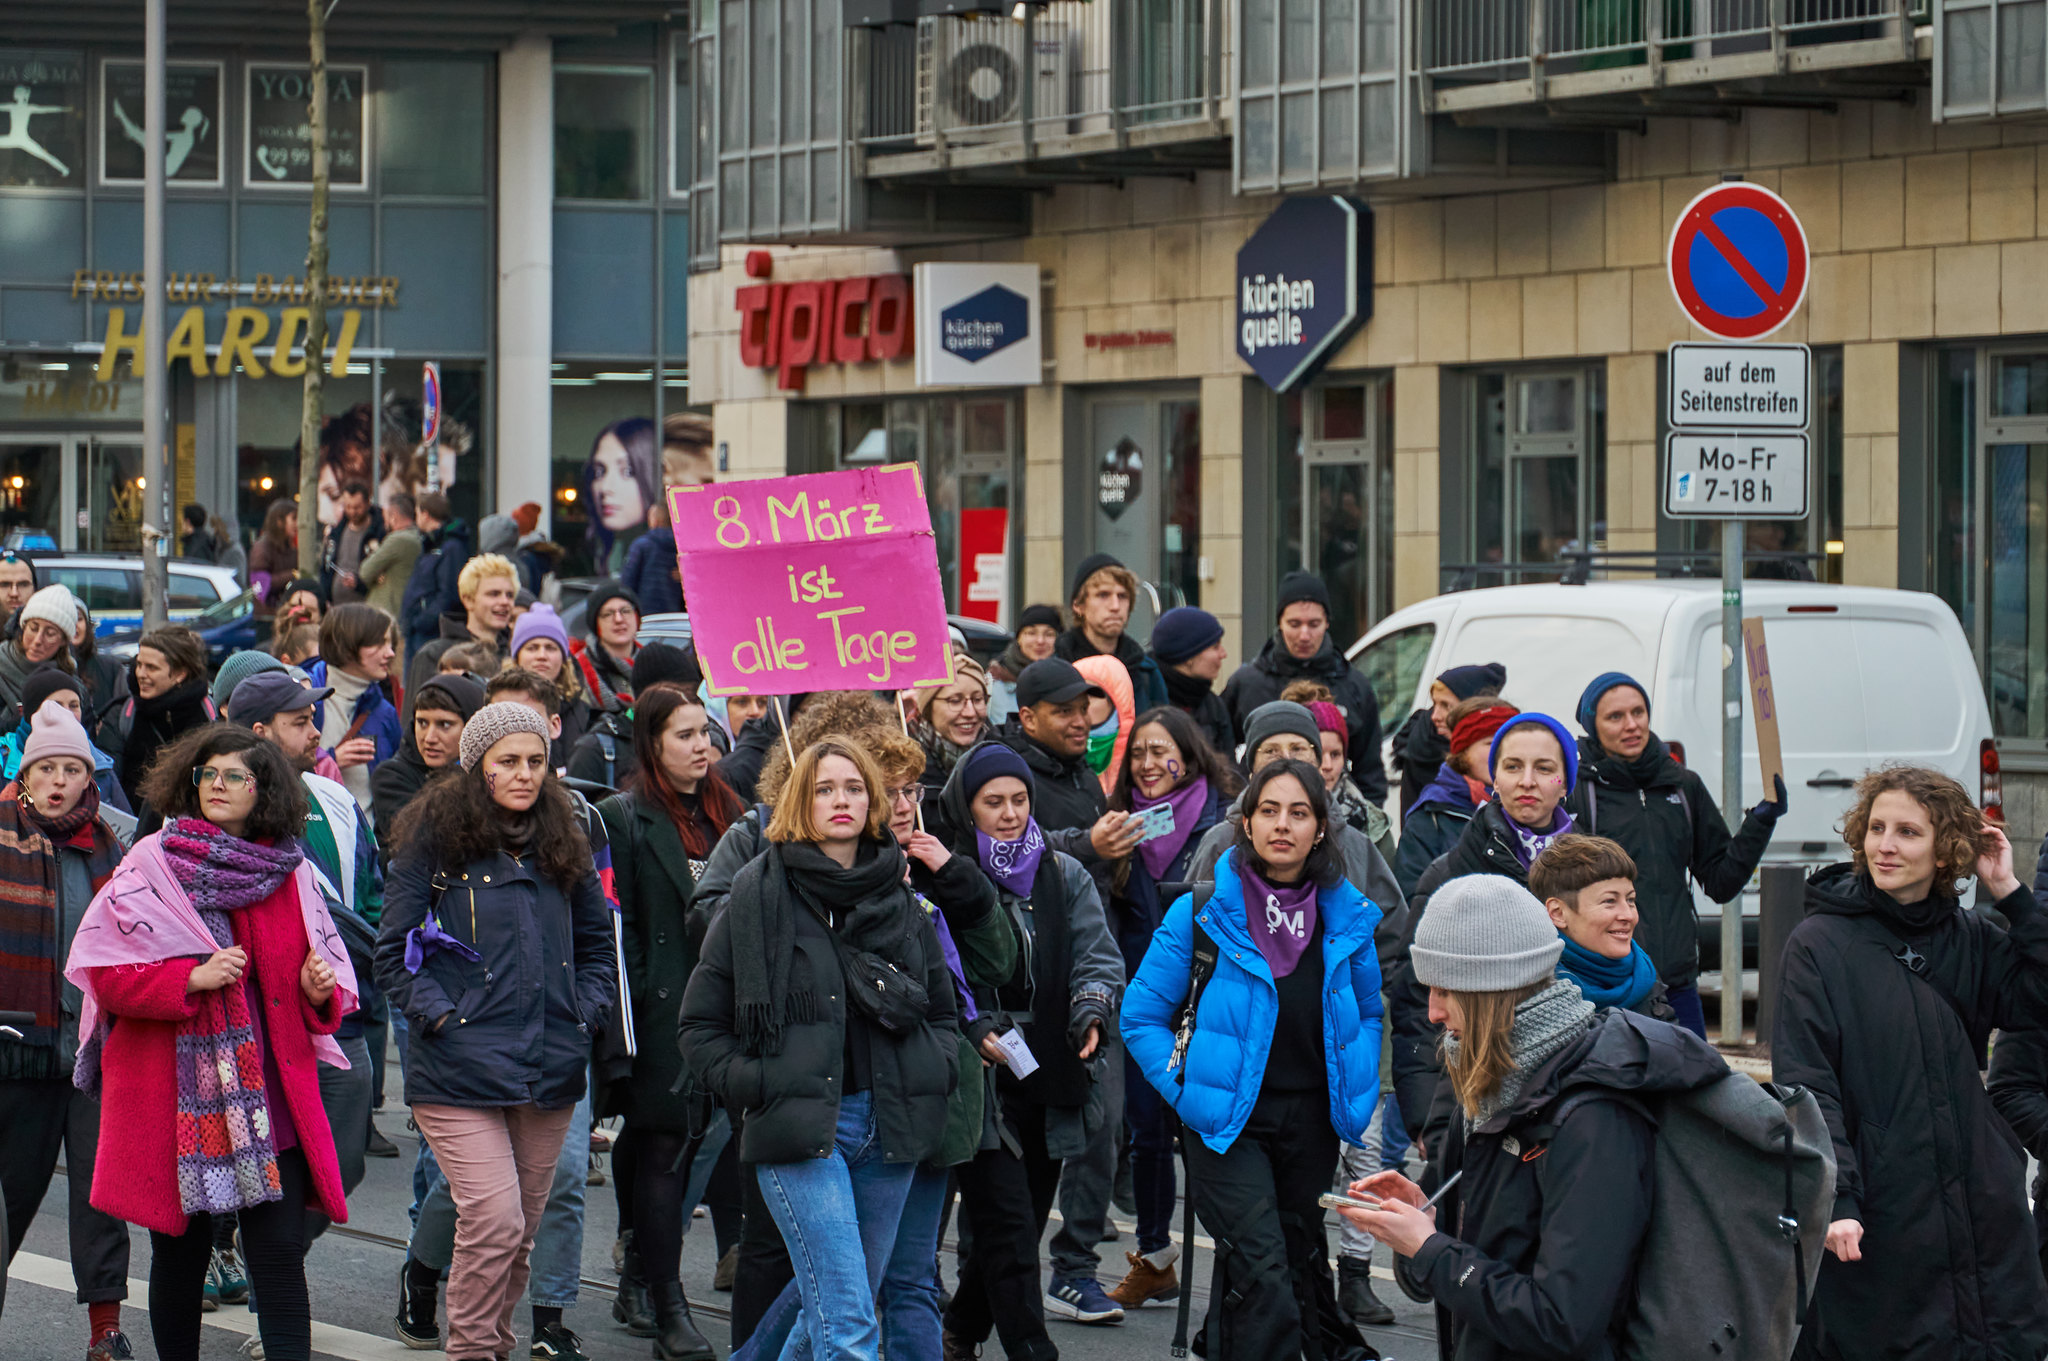   »Gemeinsam laut sein können« | Am 8. März ist feministischer Kampftag  